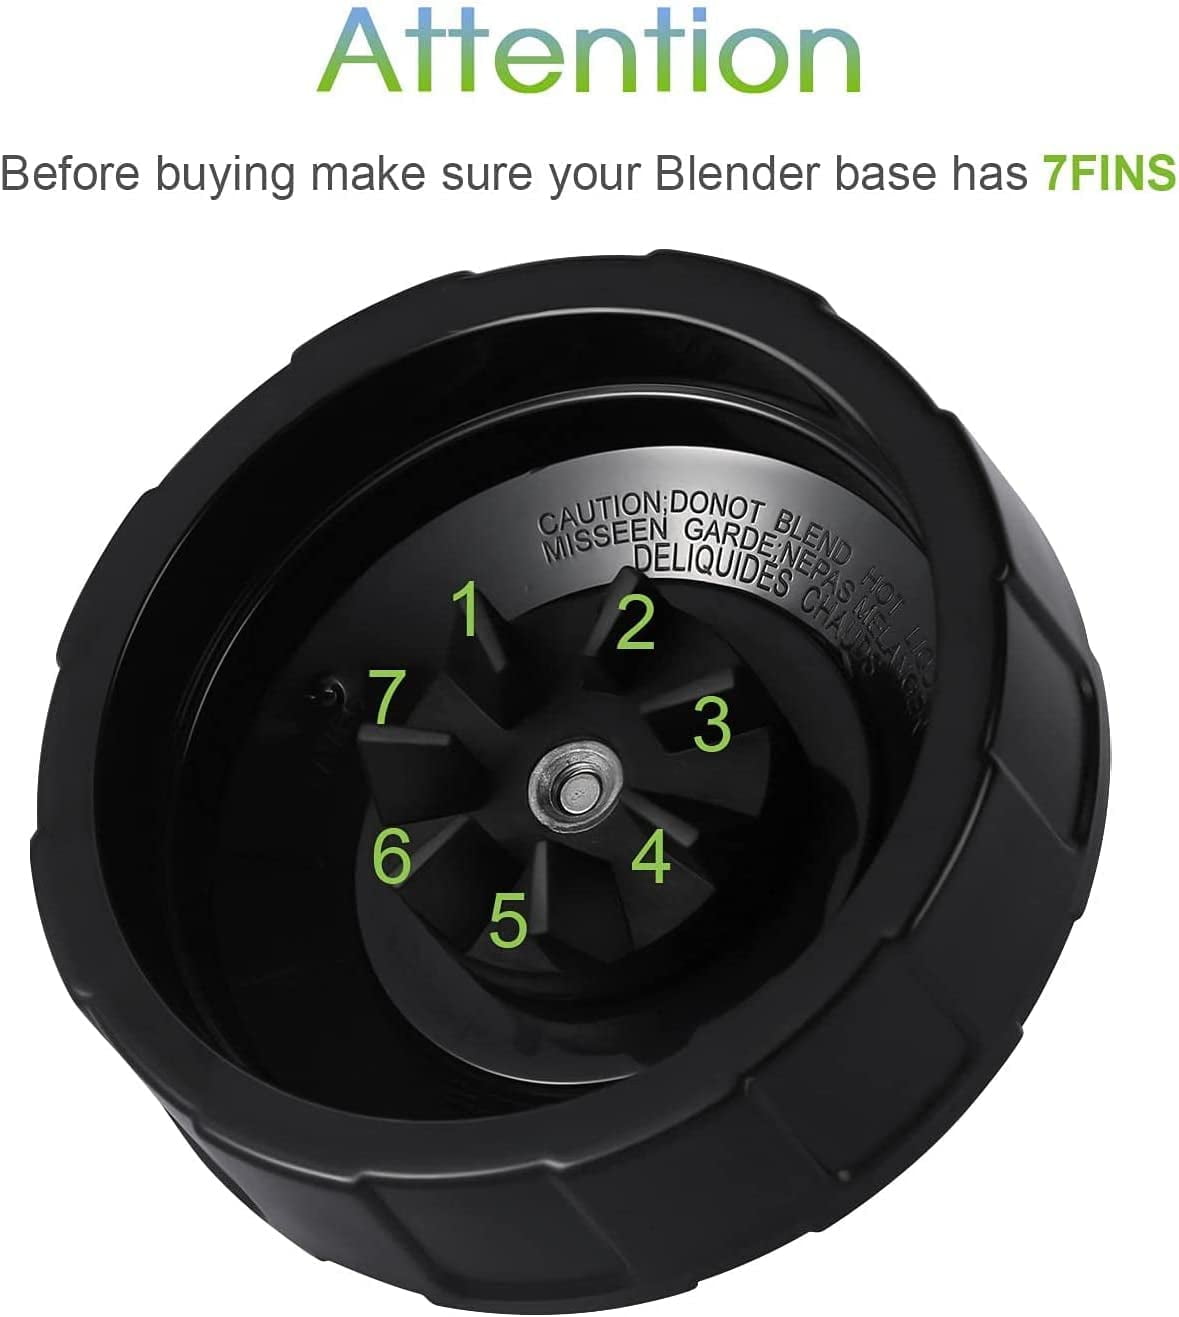 for Ninja Blender Bl450-30 Bl456-30 BL480-30Ect, 24oz Ninja Blender Cups and 7 Fins Blade Accessories, Clear